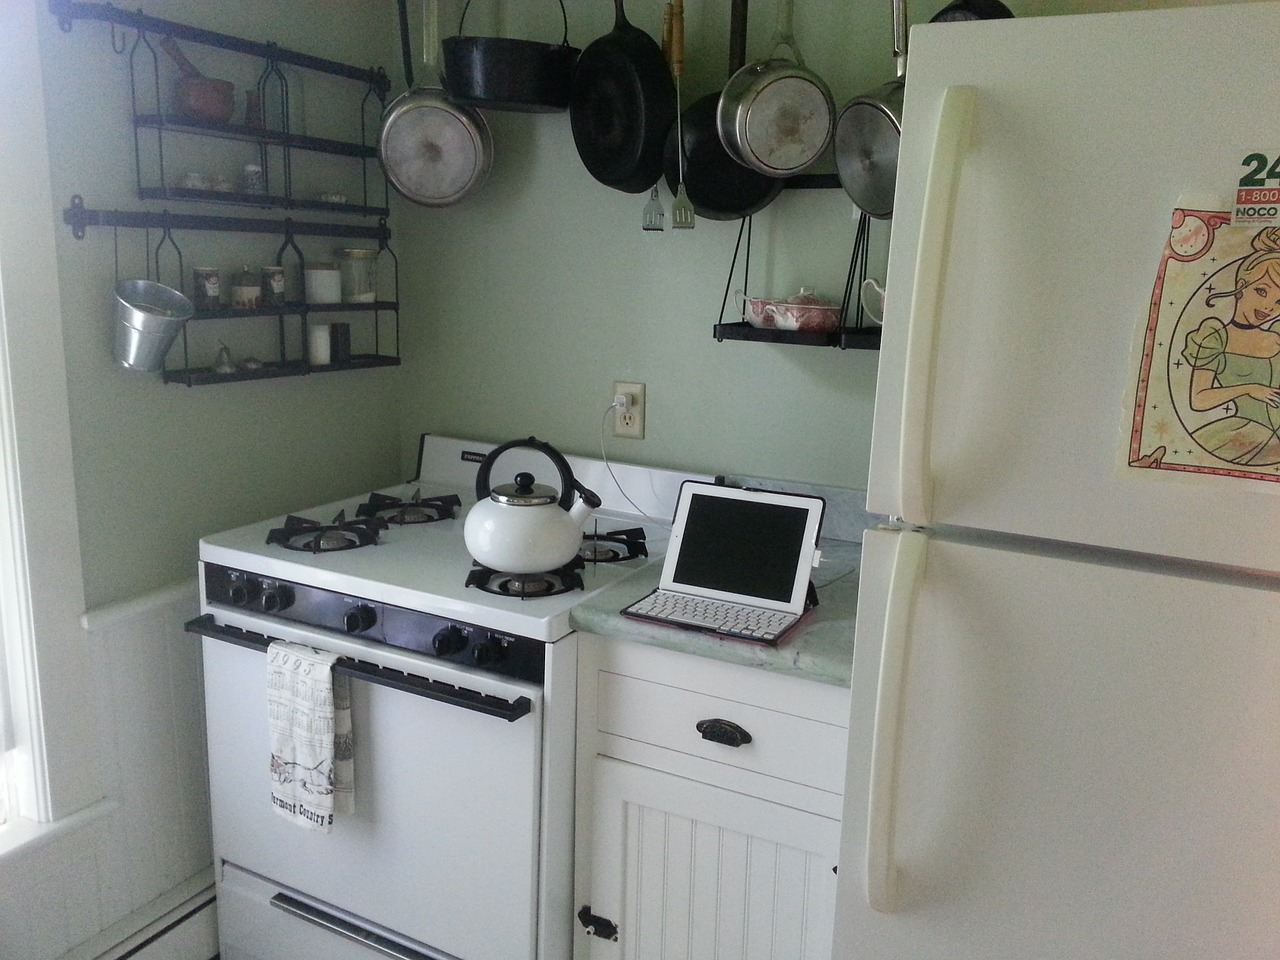 kitchen ipad stove free photo